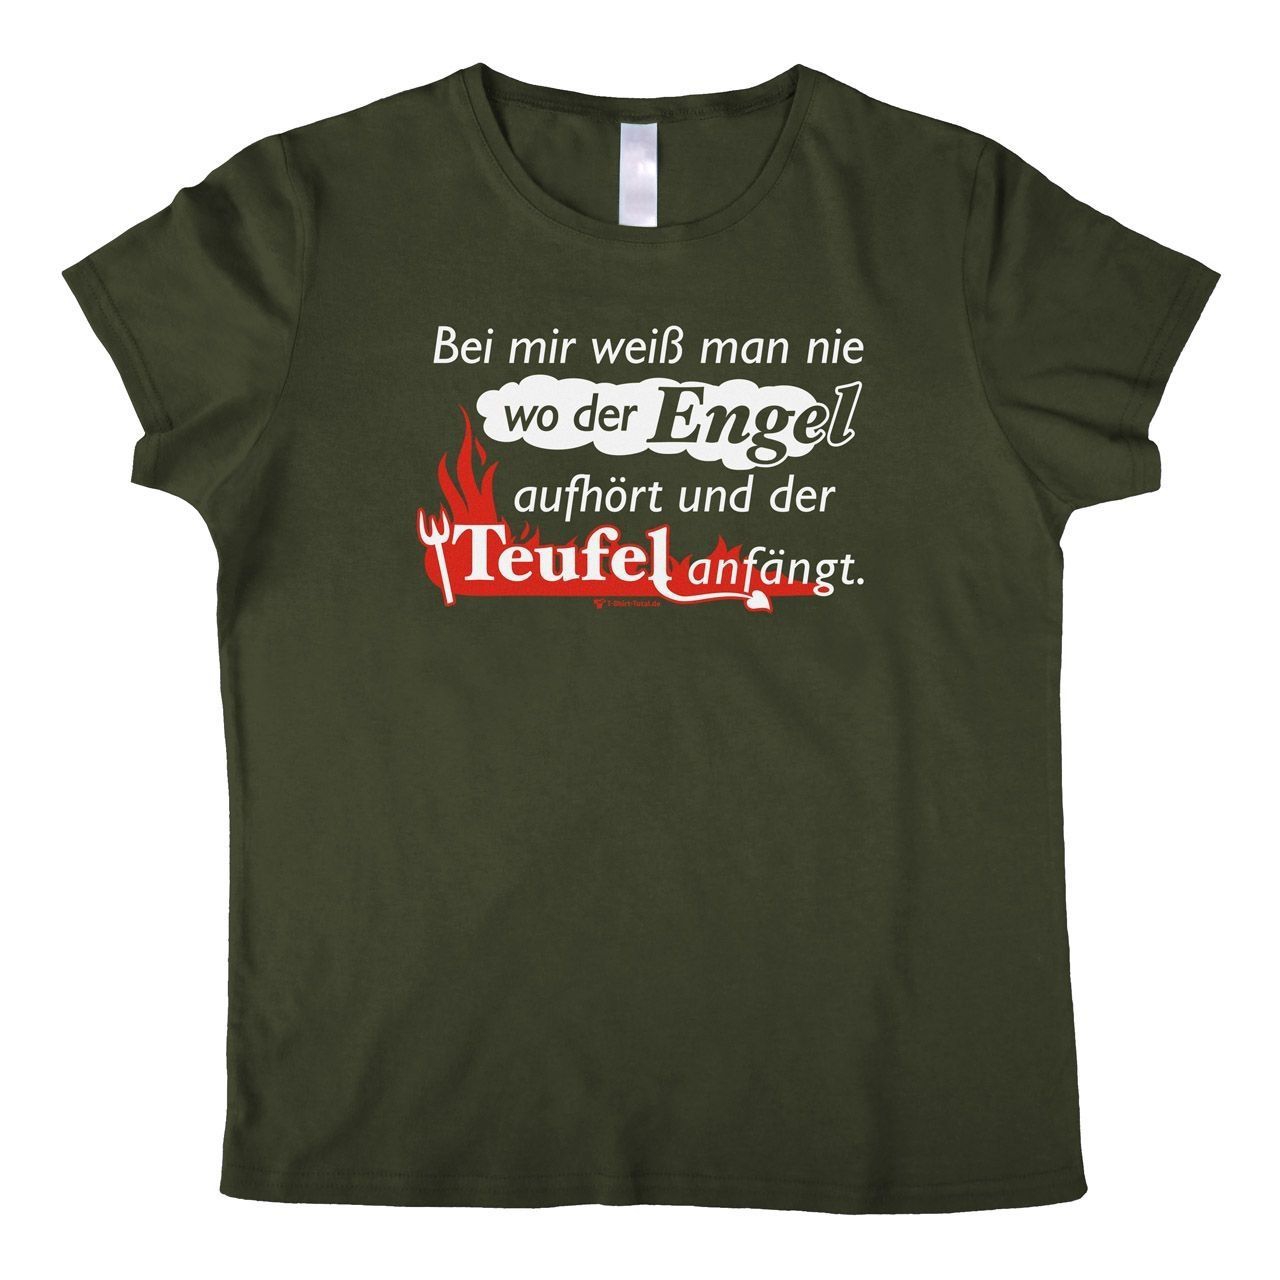 Engel Teufel Woman T-Shirt khaki 2-Extra Large